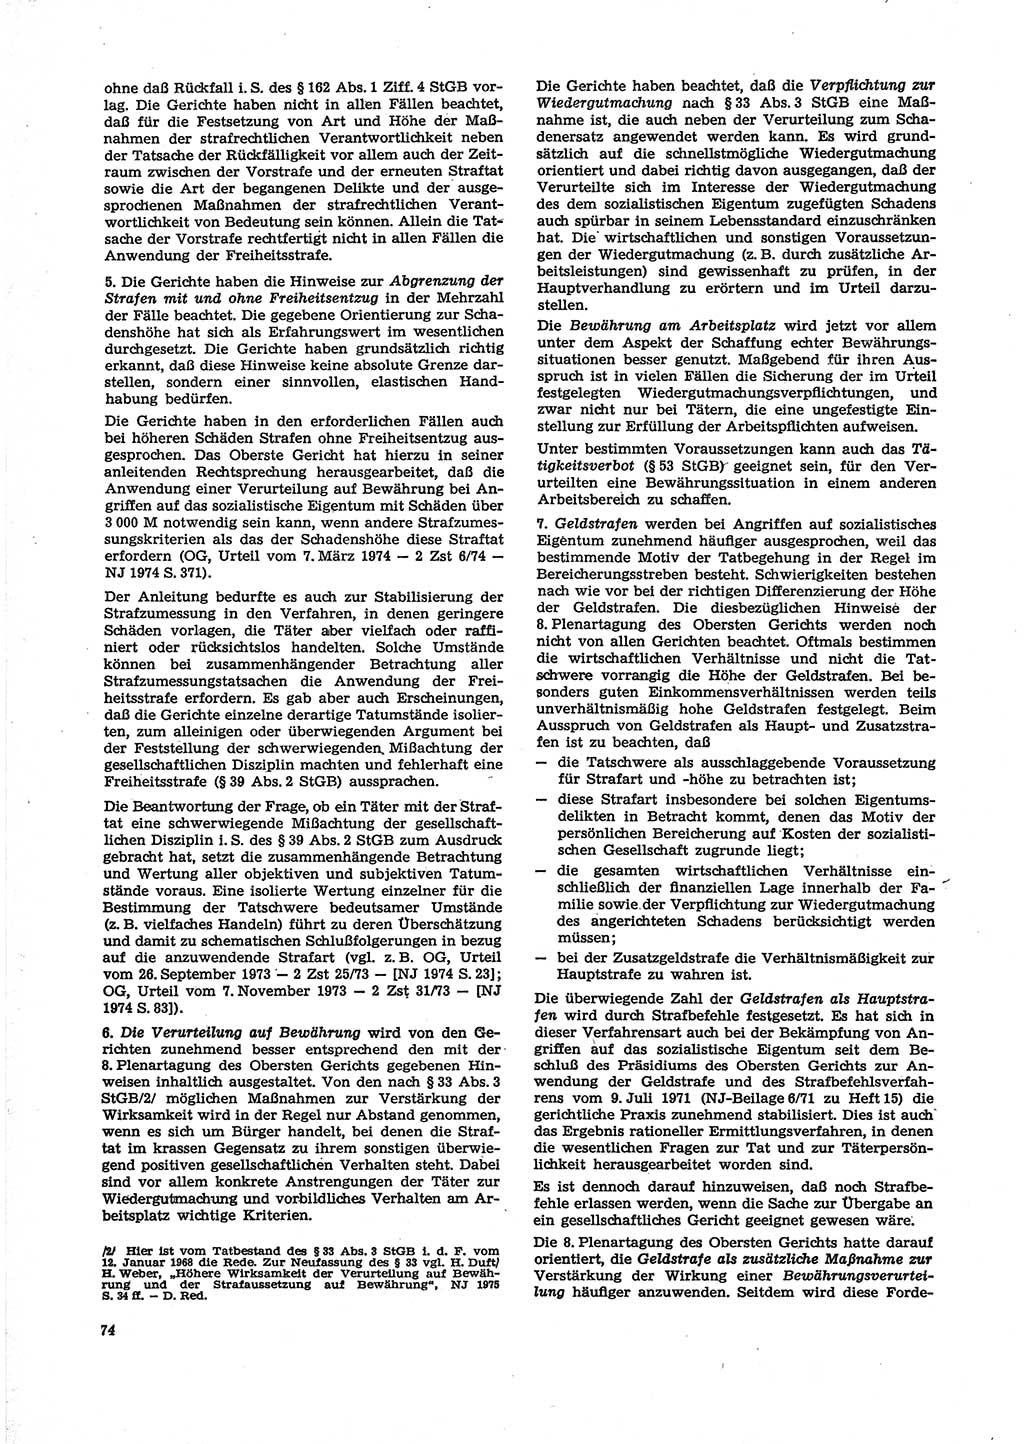 Neue Justiz (NJ), Zeitschrift für Recht und Rechtswissenschaft [Deutsche Demokratische Republik (DDR)], 29. Jahrgang 1975, Seite 74 (NJ DDR 1975, S. 74)